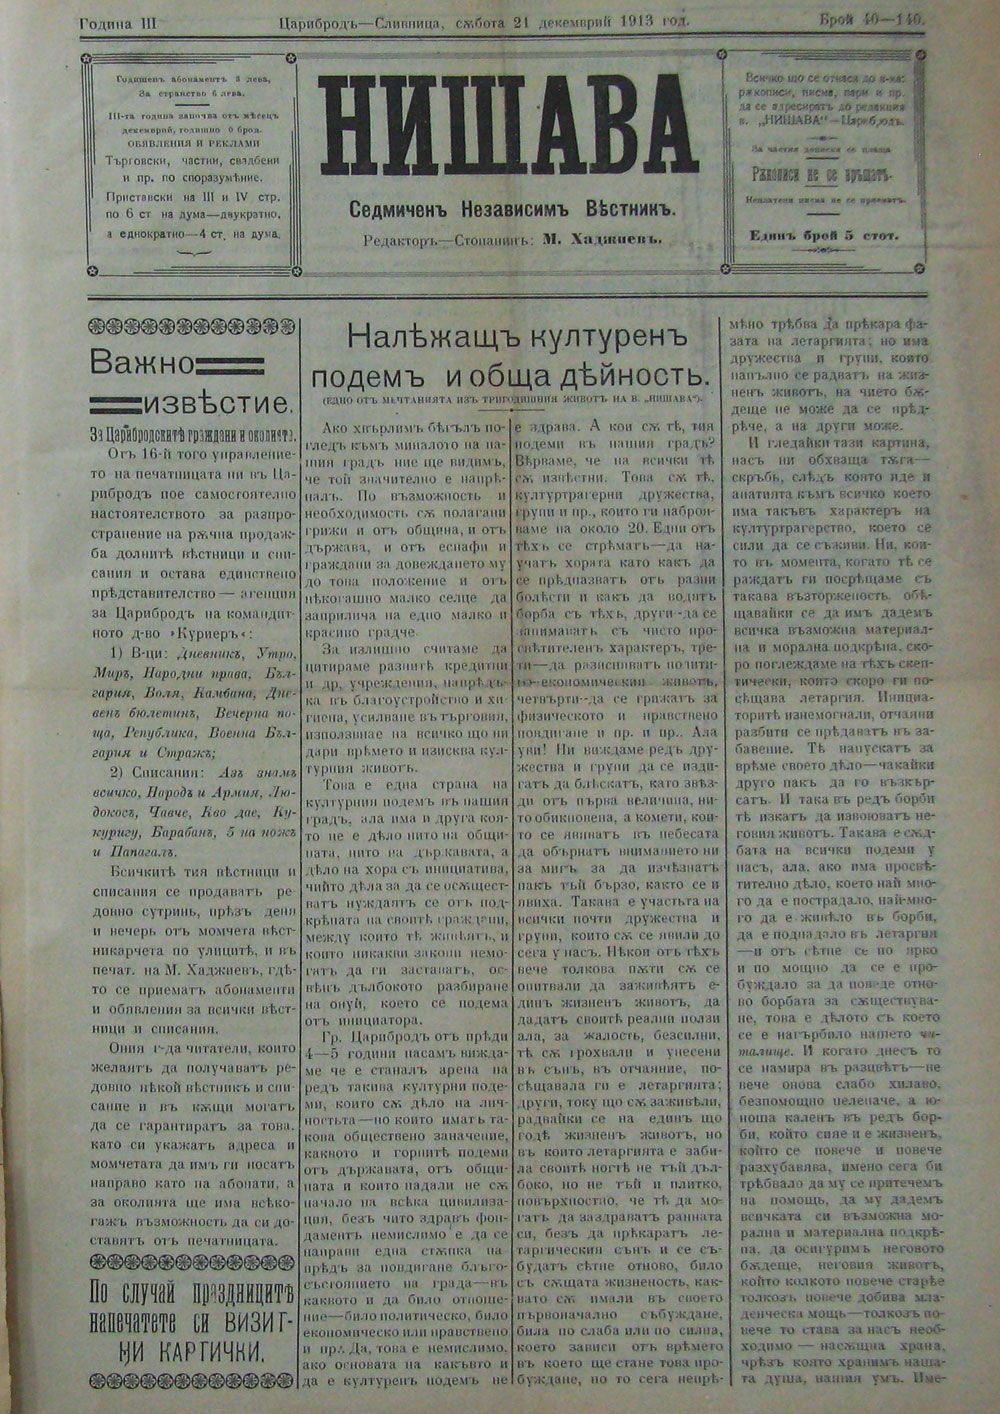 в-к "Нишава", 1913г., бр. 40-140, стр. 1